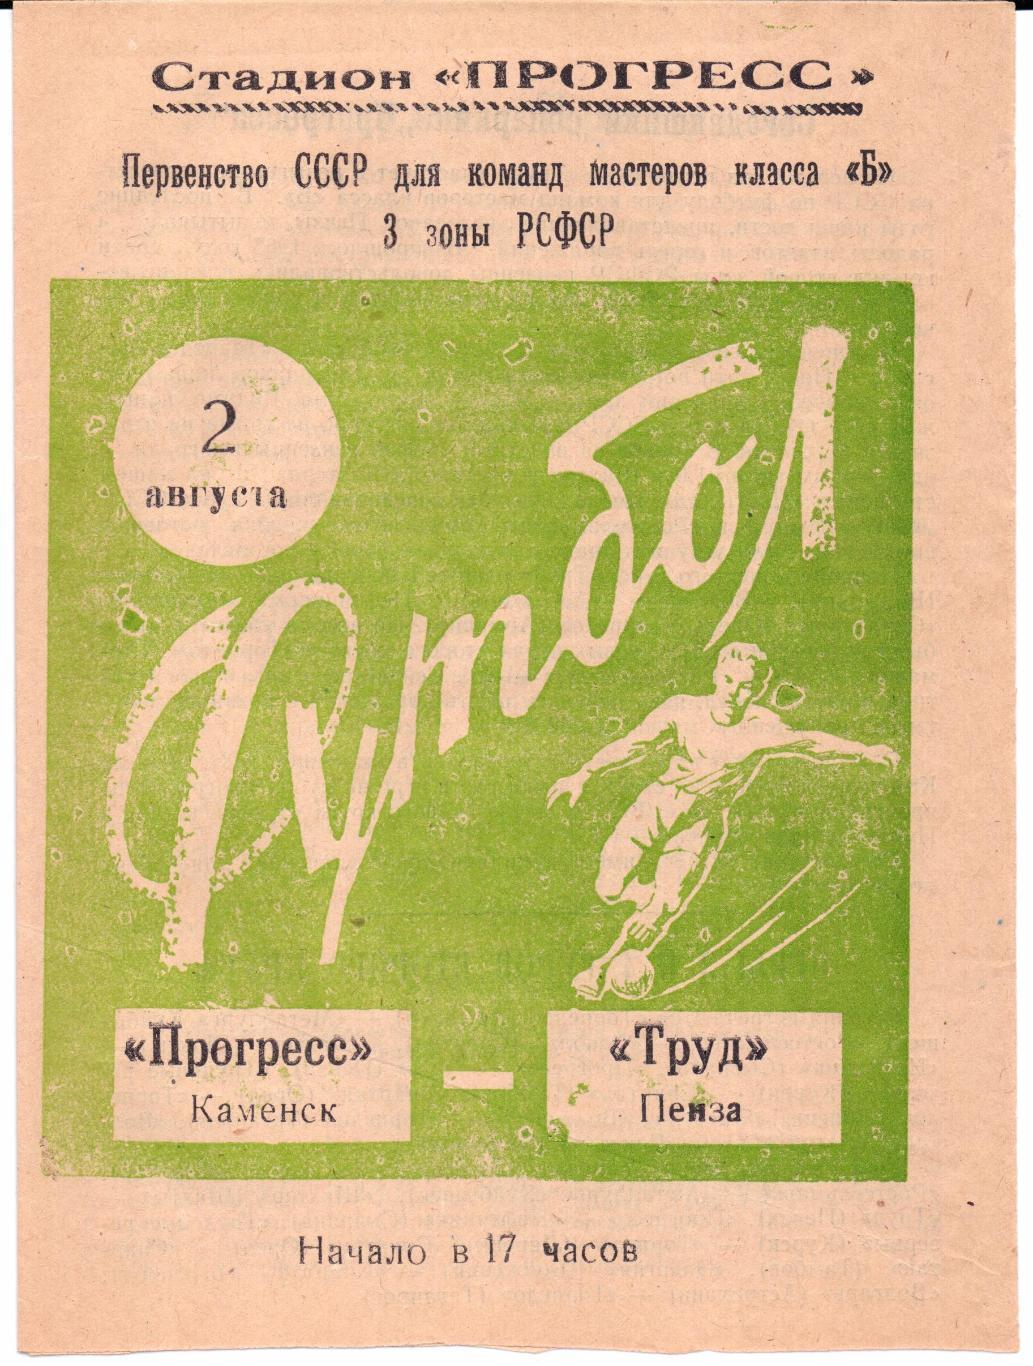 Класс Б 3-я зона Прогресс(Каменск)-Труд(Пенза )02.08.1964